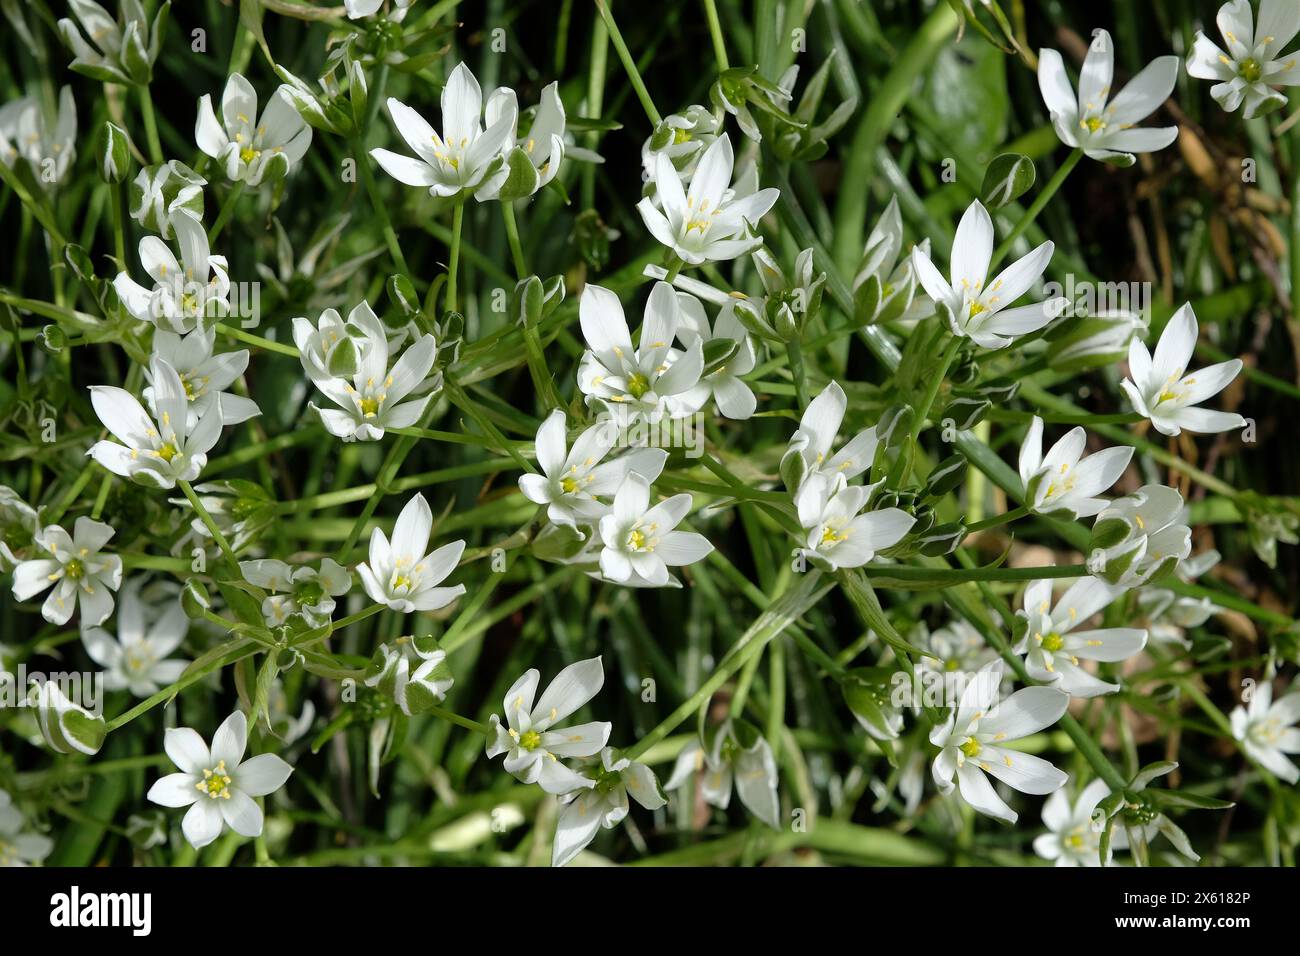 White Ornithogalum umbellatum, Common Star of Bethlehem in flower. Stock Photo